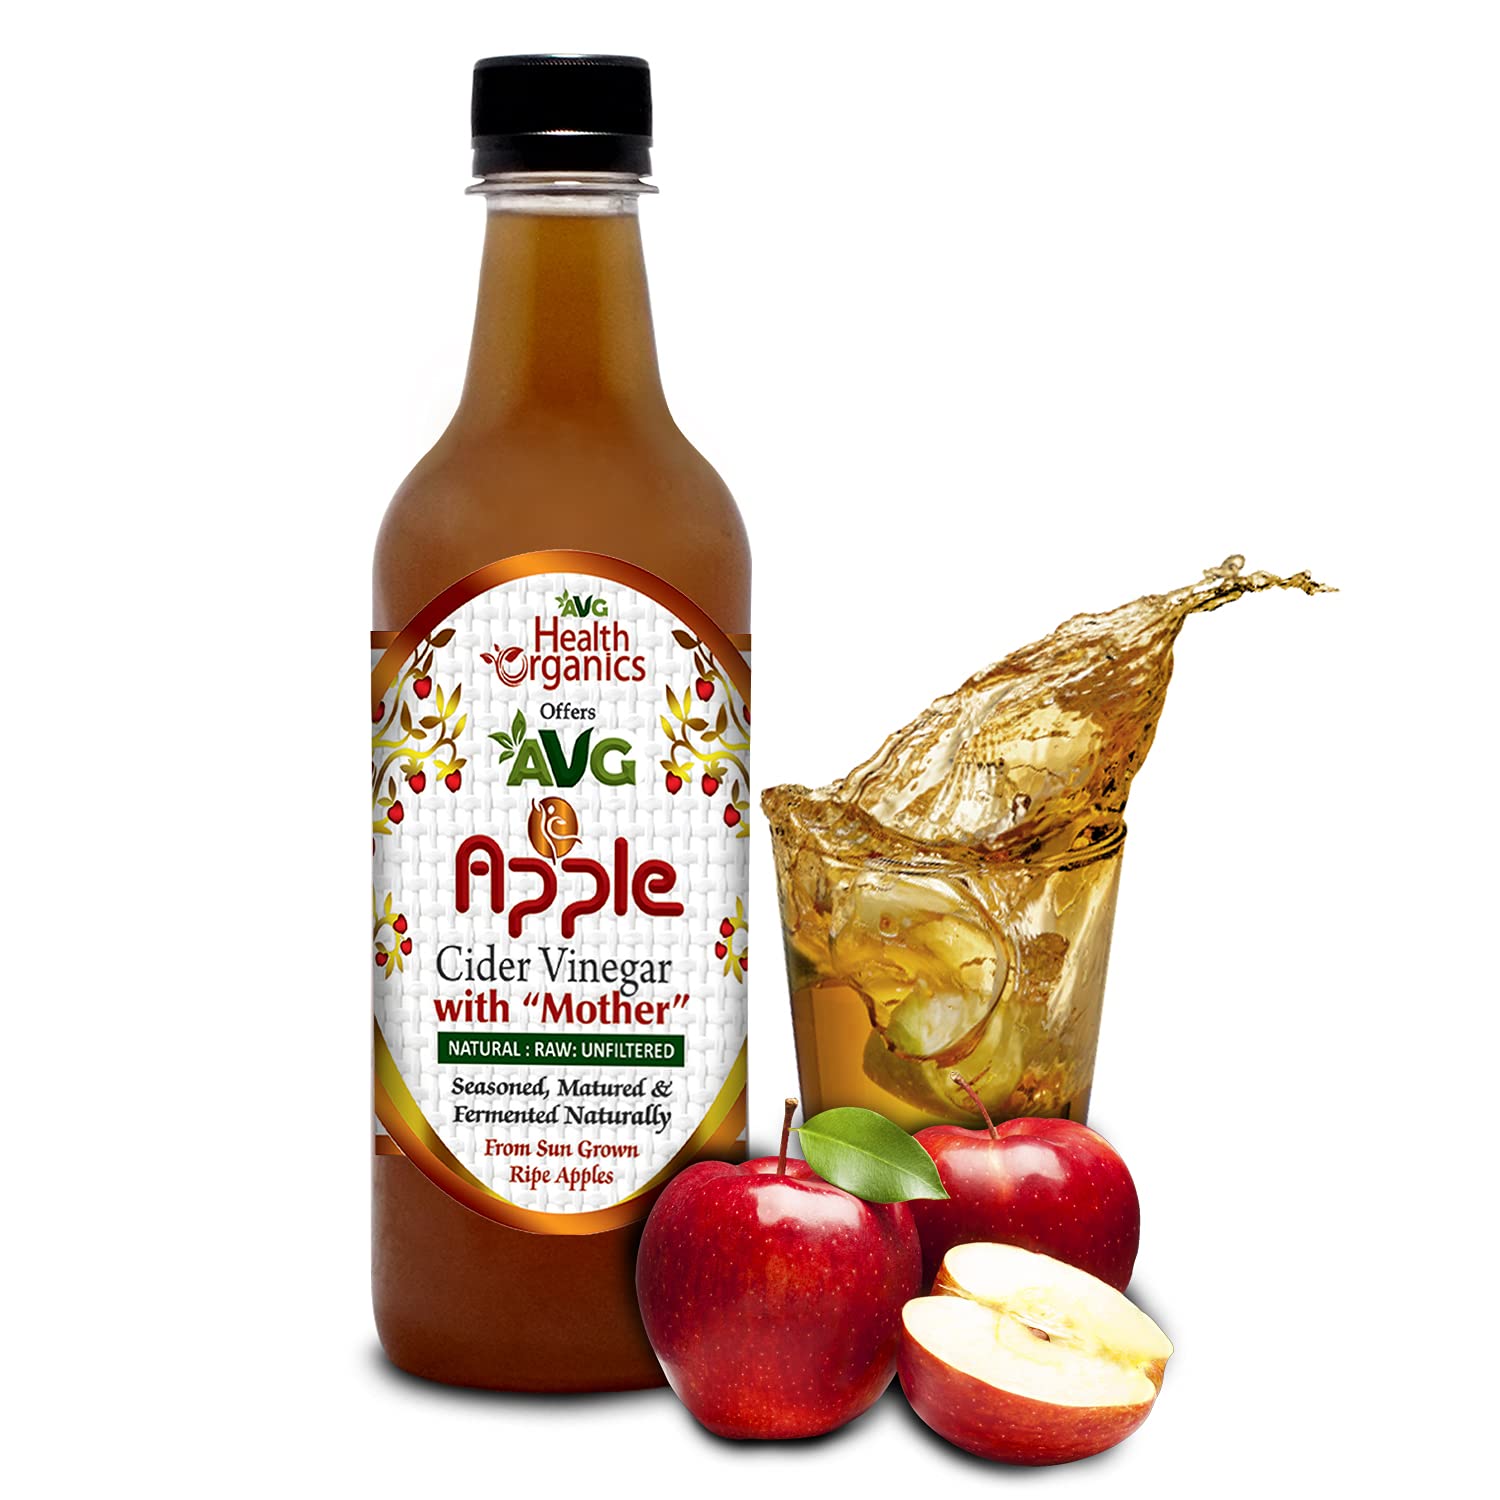 AVG Apple Cider Vinegar ACV Filtered for Weight Management & Metabolism